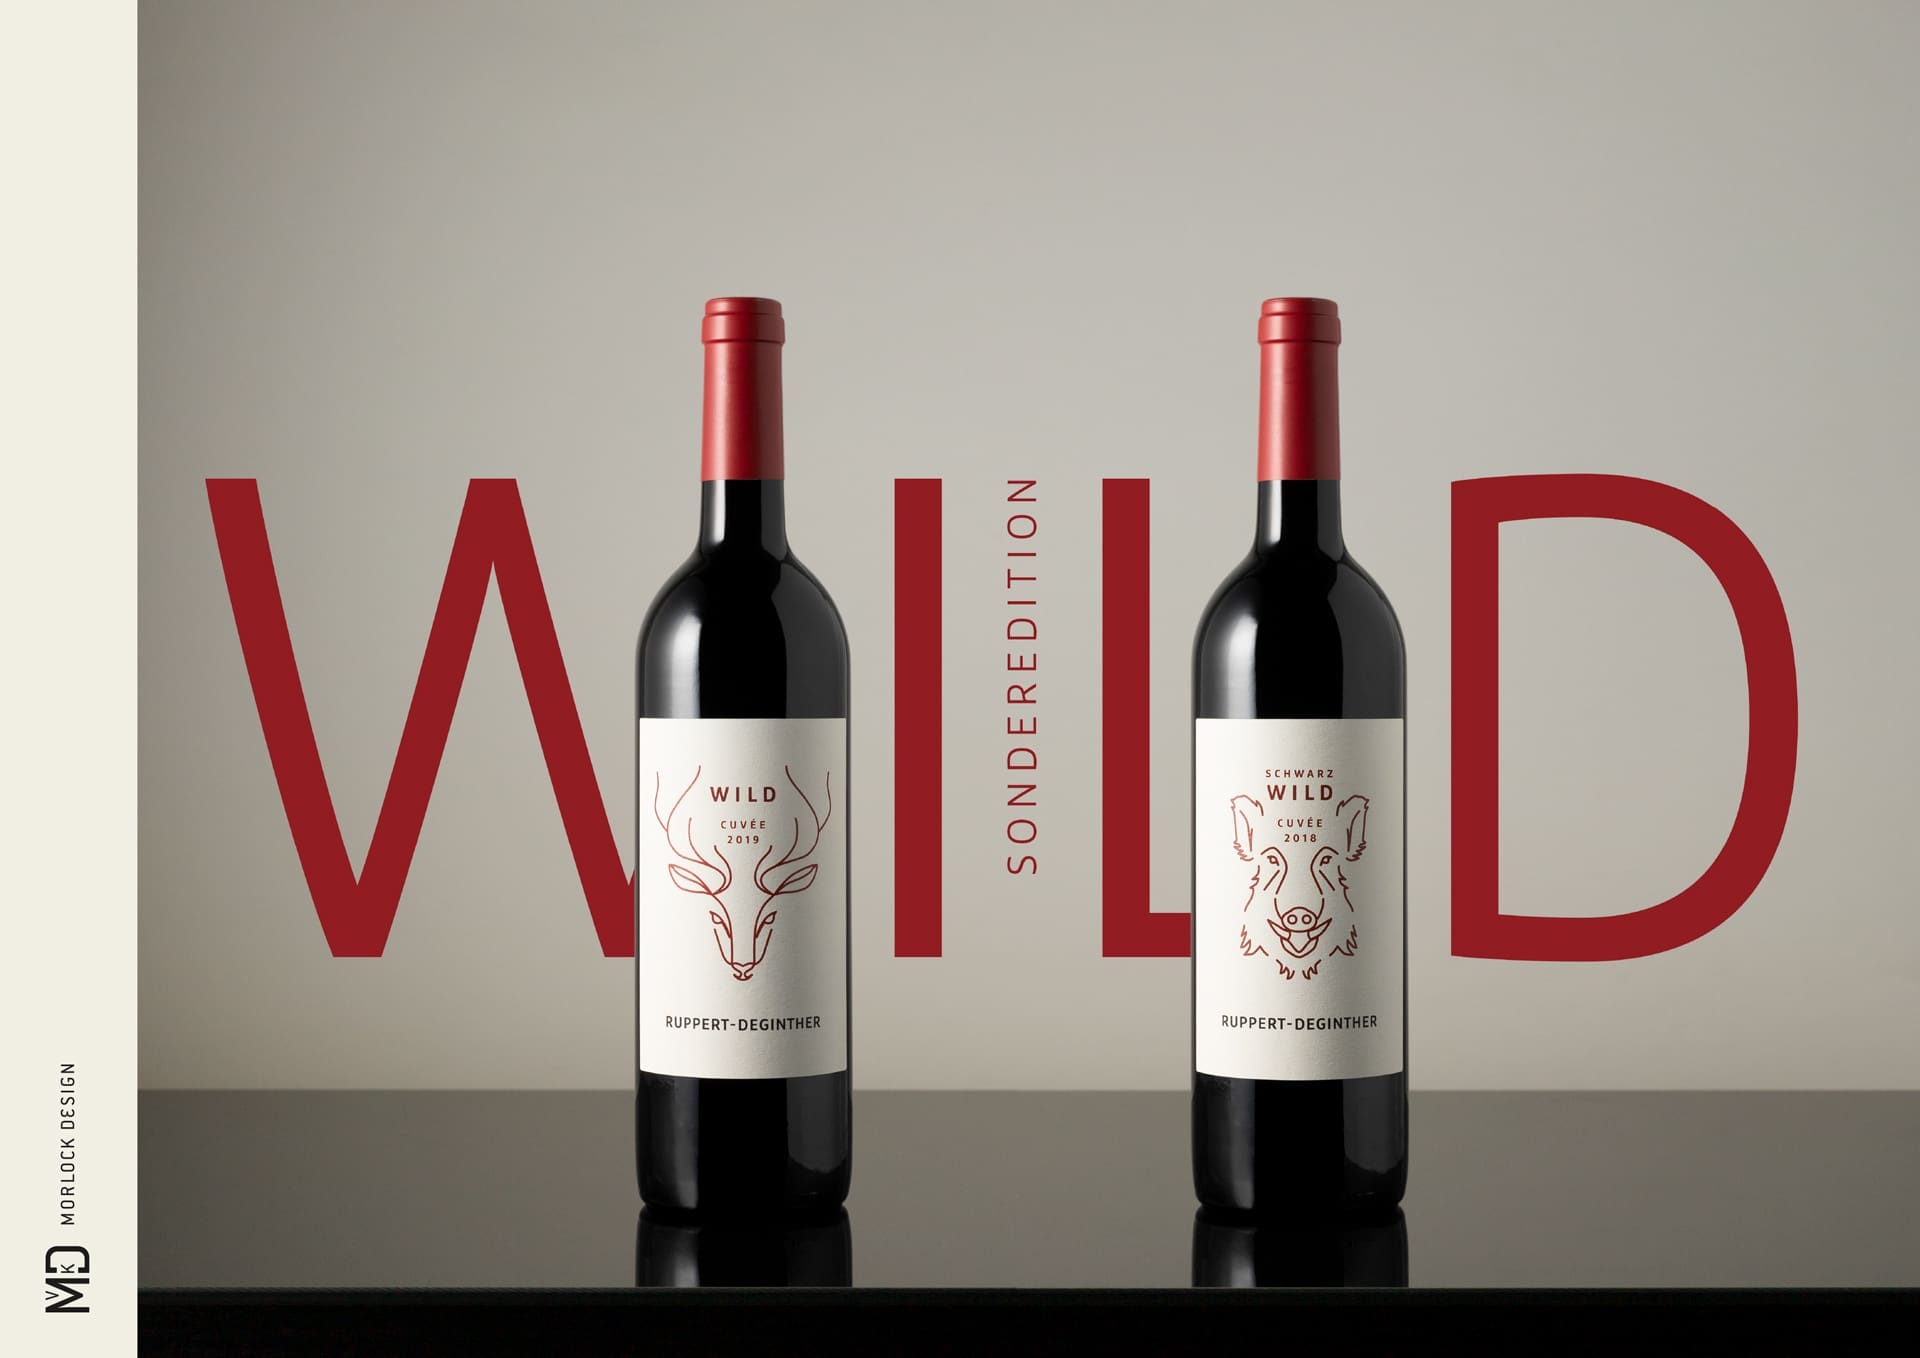 Corporate Identity Design für Ruppert-Deginther | Ein ausgezeichnetes Weingut in Rheinhessen | Produkt-Fotoshooting der roten Cuvées "Wild" und "Schwarzwild" aus dem Jahr 2022